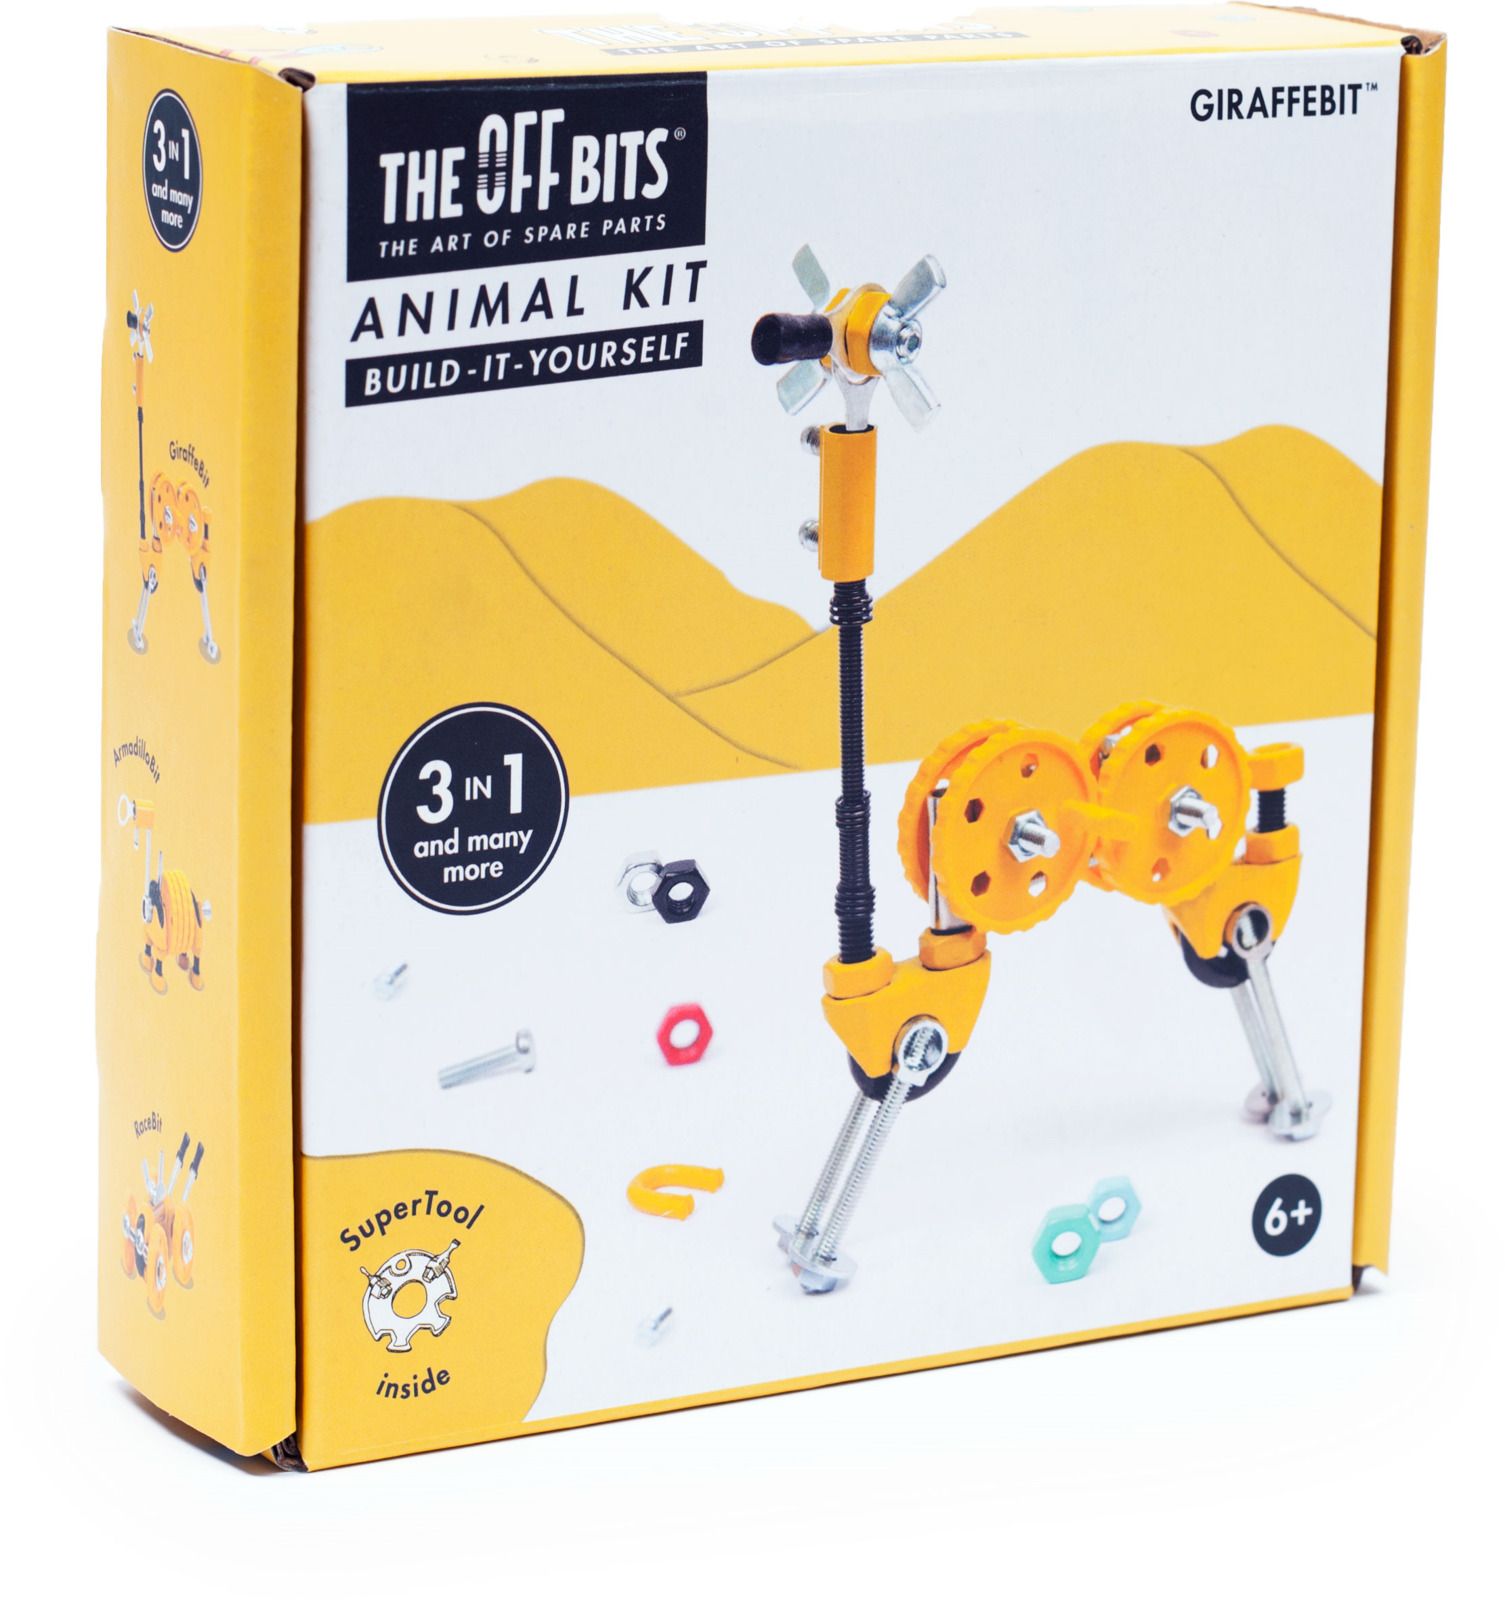   The Offbits Giraffebit